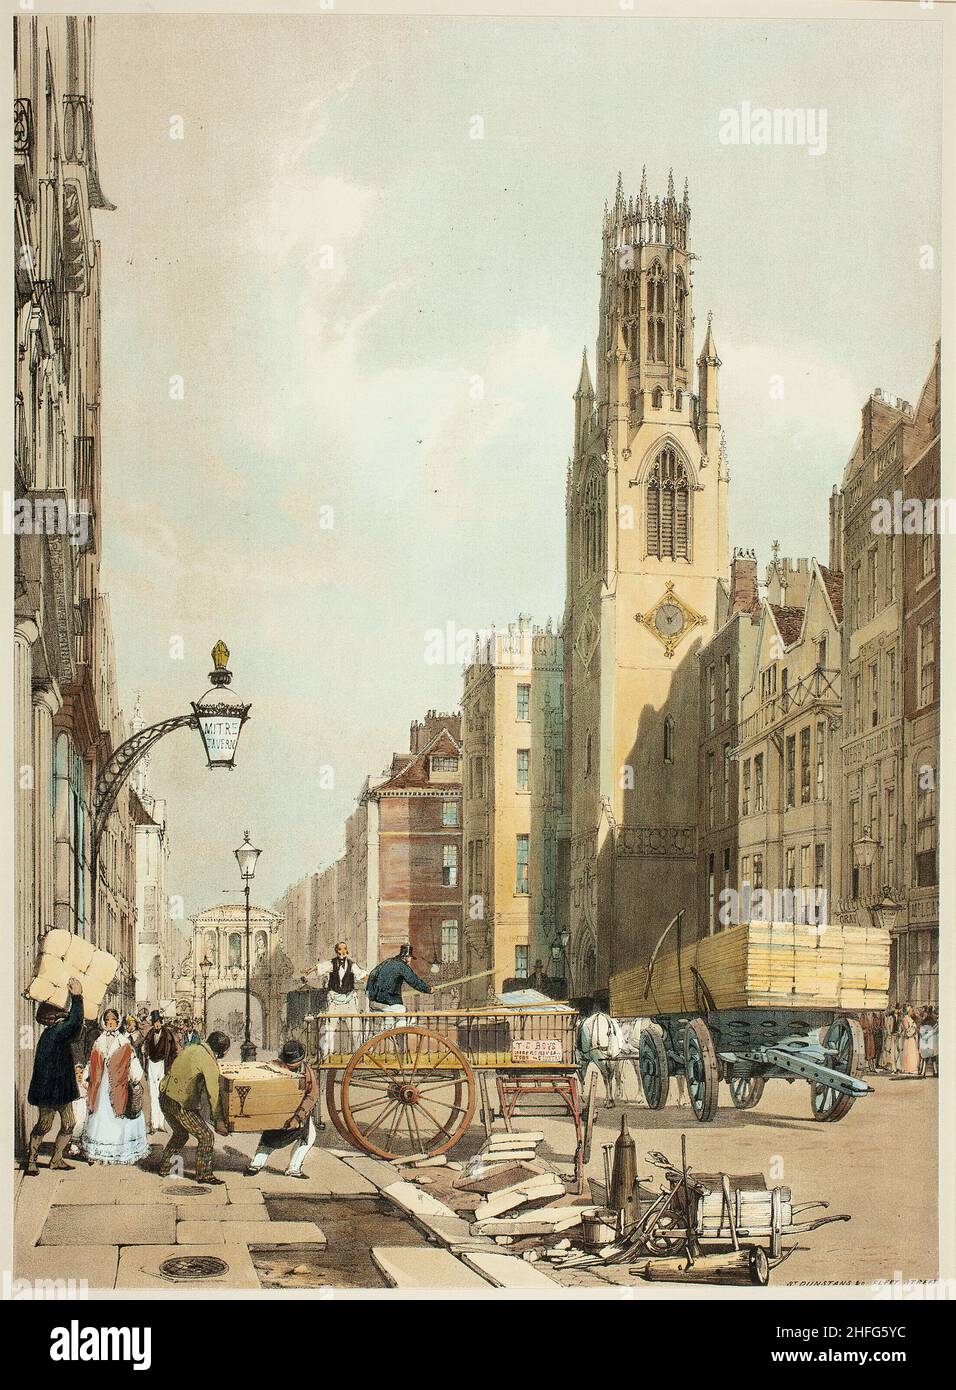 St. Dunstans Fleet Street, placa 23 de las vistas originales de Londres tal como es, 1842. Foto de stock